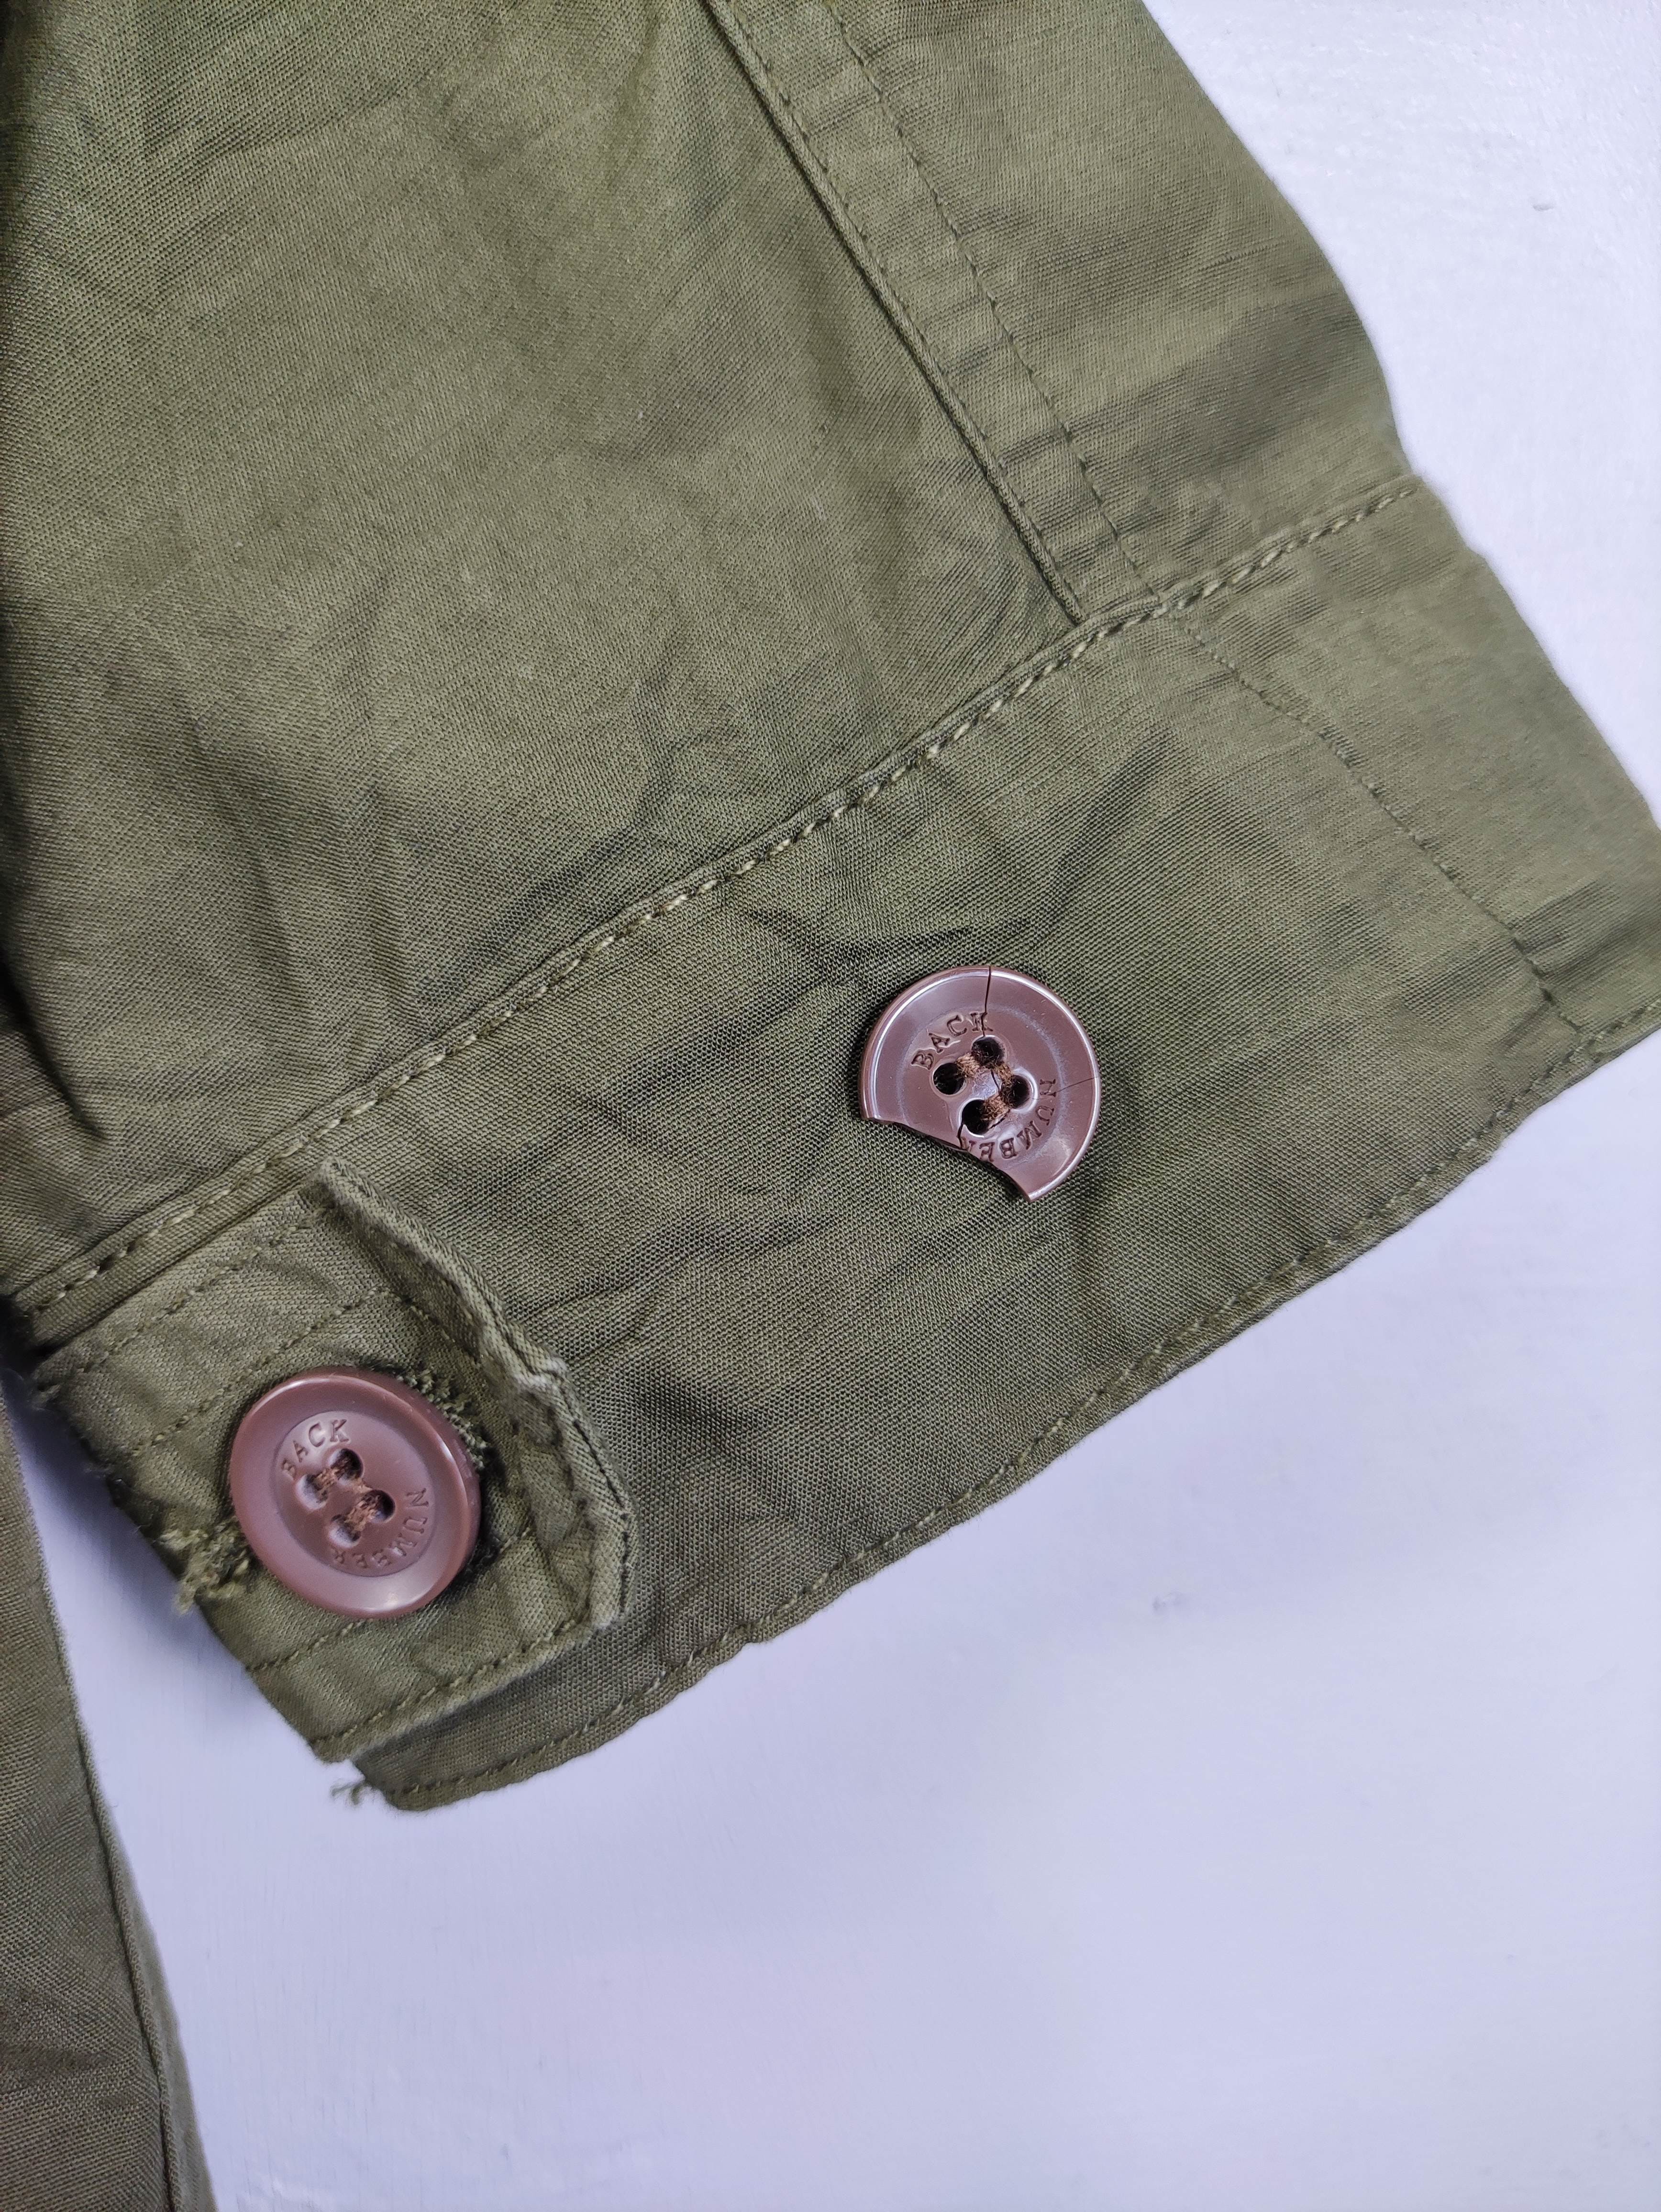 Japanese Brand - Vintage Back Number Fishtail Parka Jacket Zipper - 10